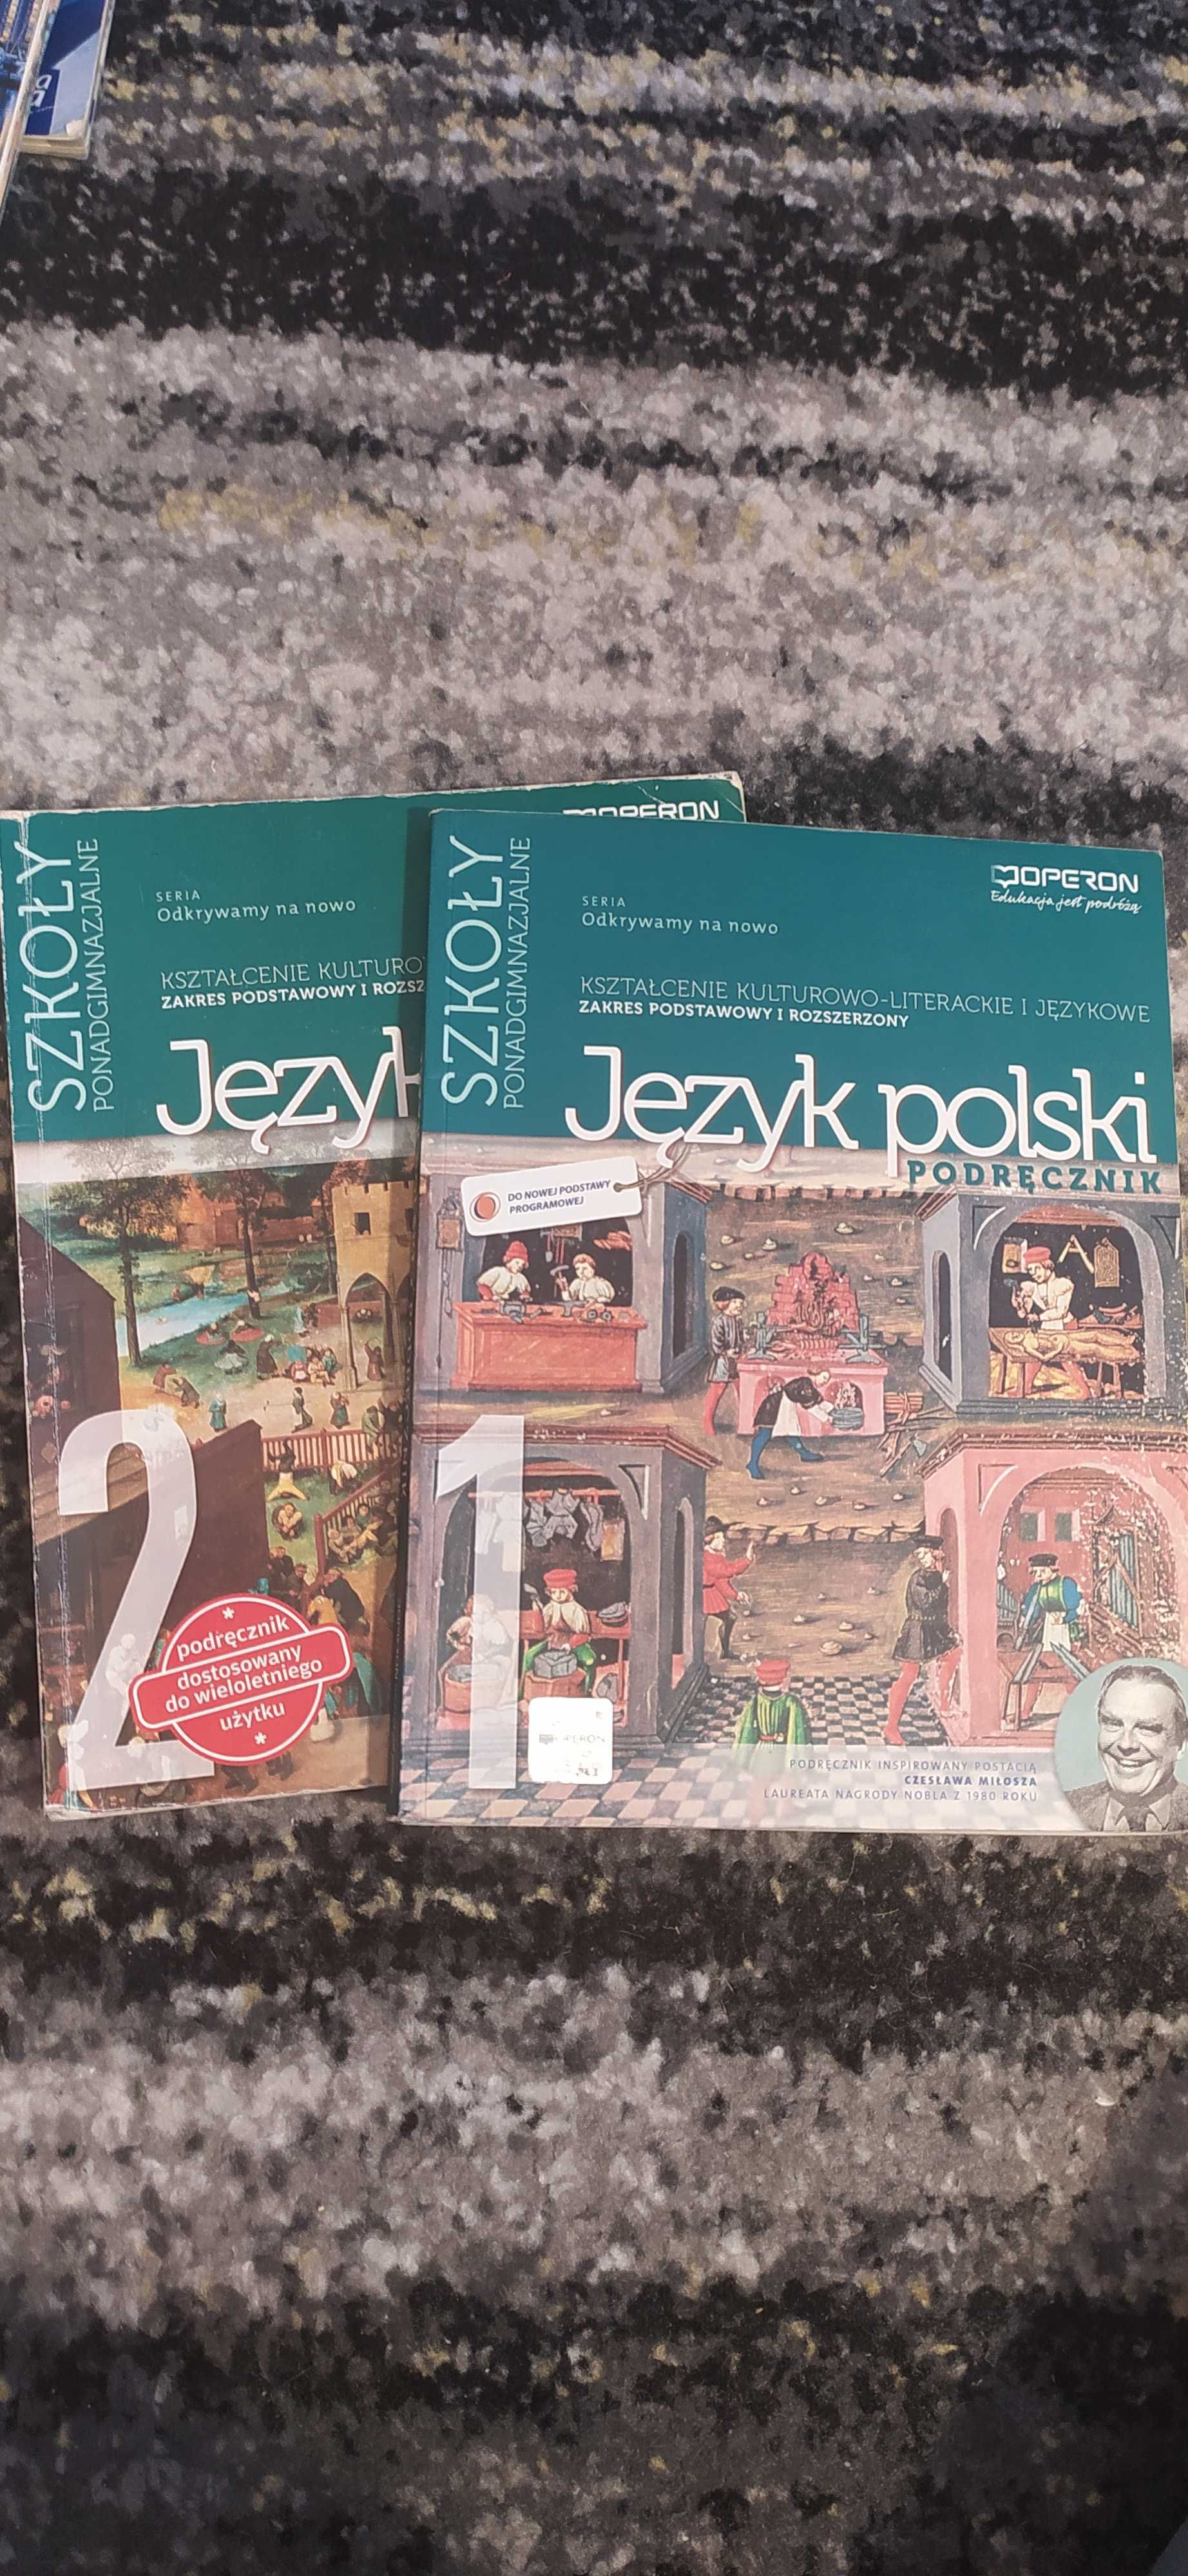 Podręcznik odkrywamy na nowo Język Polski 1, szkoły ponadgimnazjalne